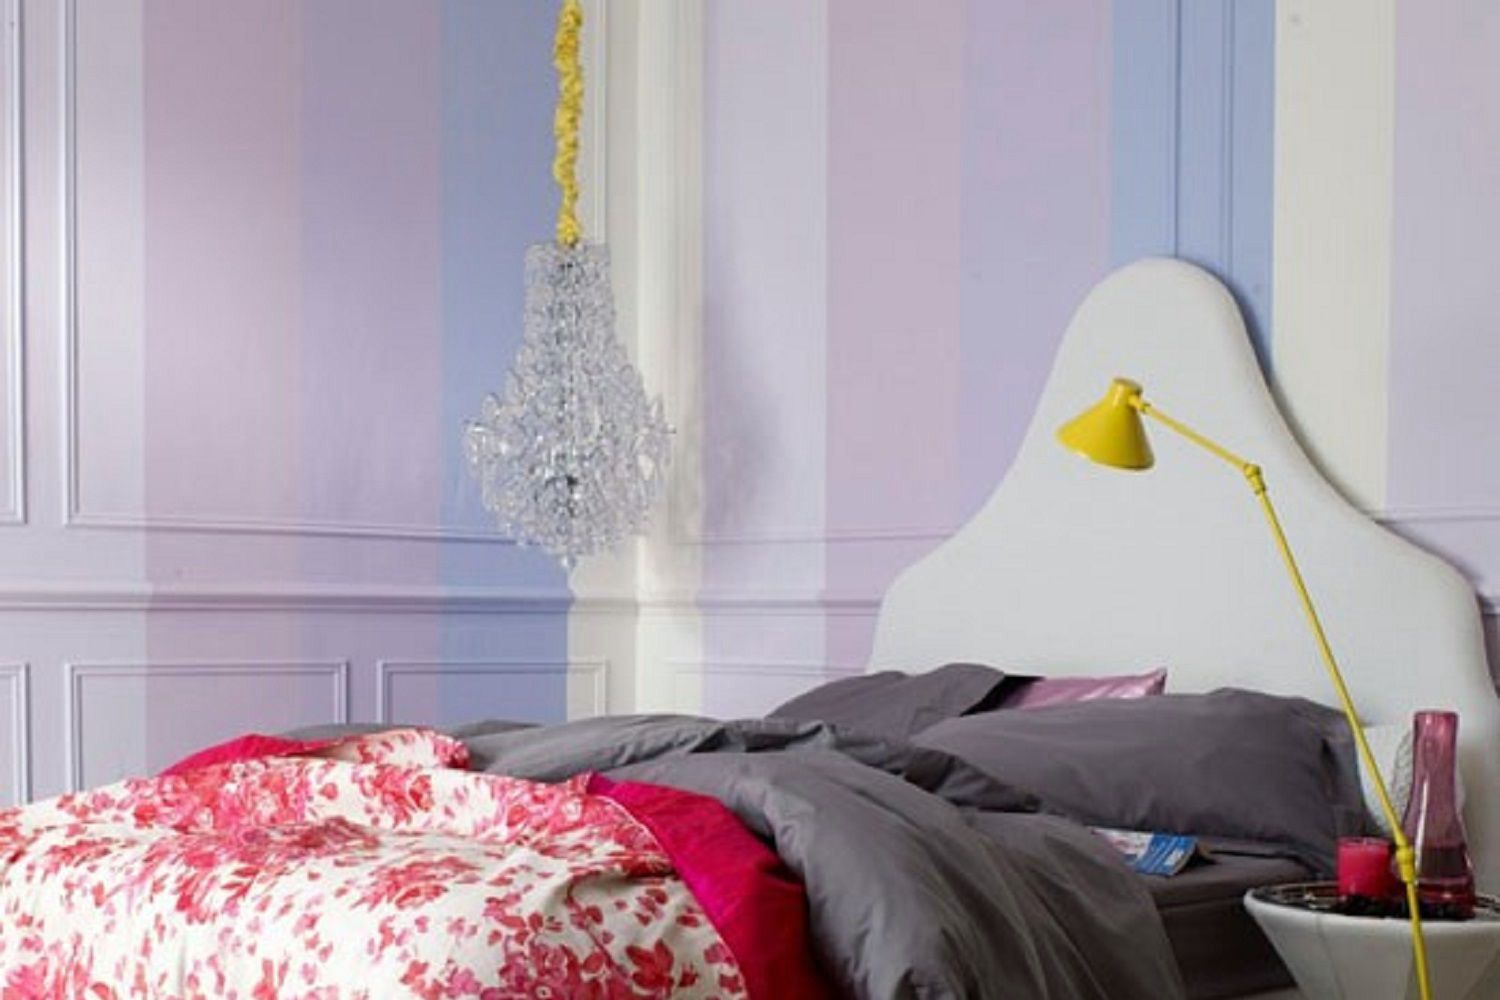 Lavendelfarbene Ombre-Wände kennzeichnen das Schlafzimmer in verschiedenen Schattierungen